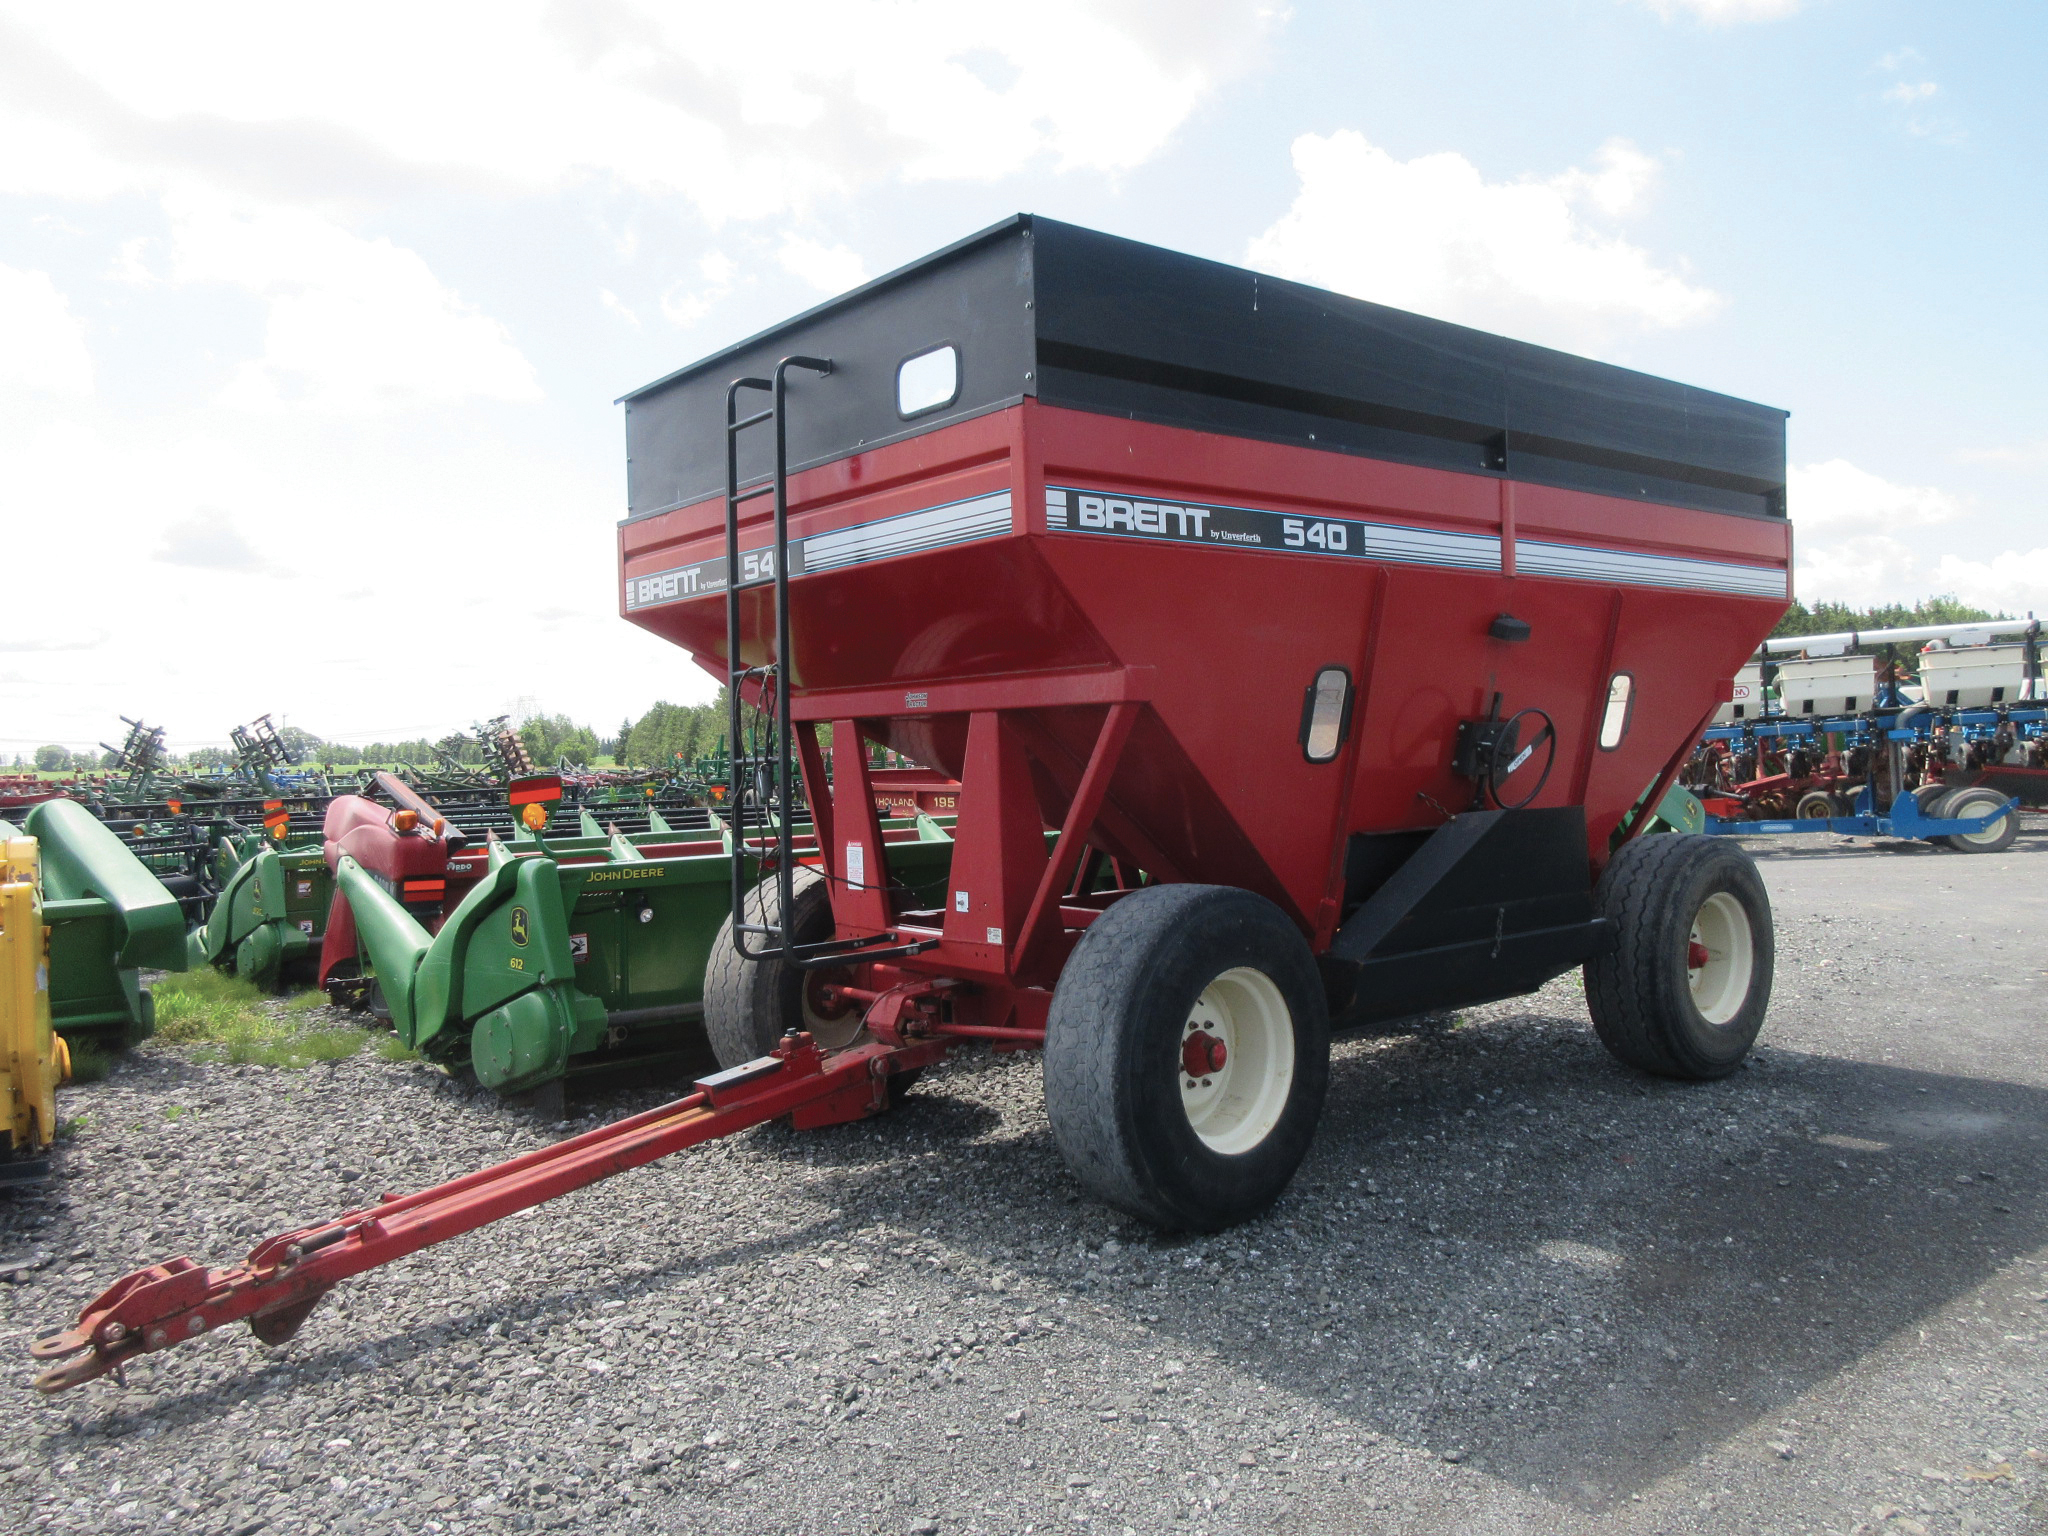 Grain trailer Brent 540